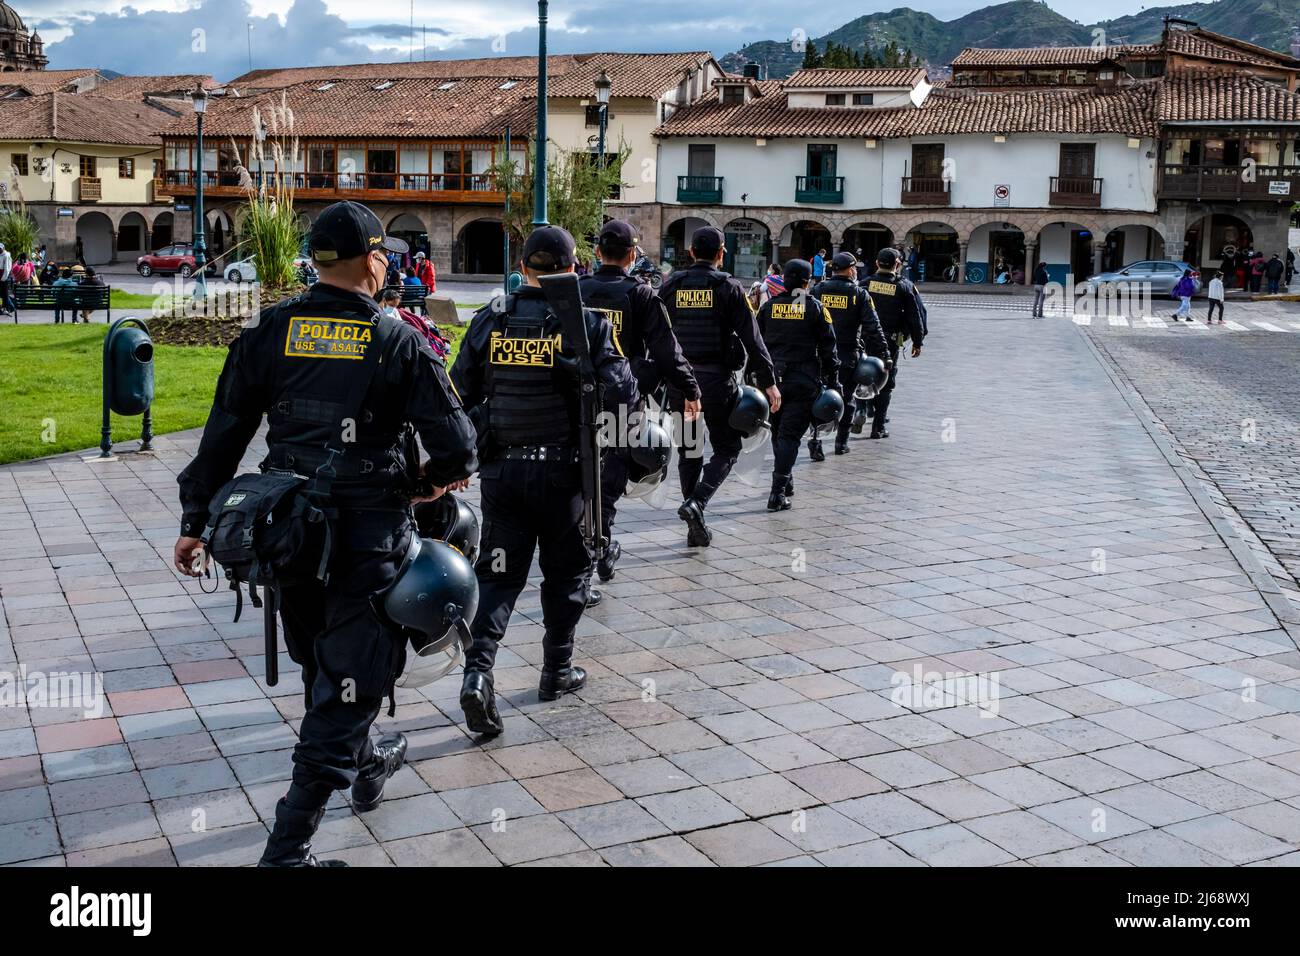 Peruvian Police Officers In Plaza De Armas, Cusco, Cusco Province, Peru. Stock Photo